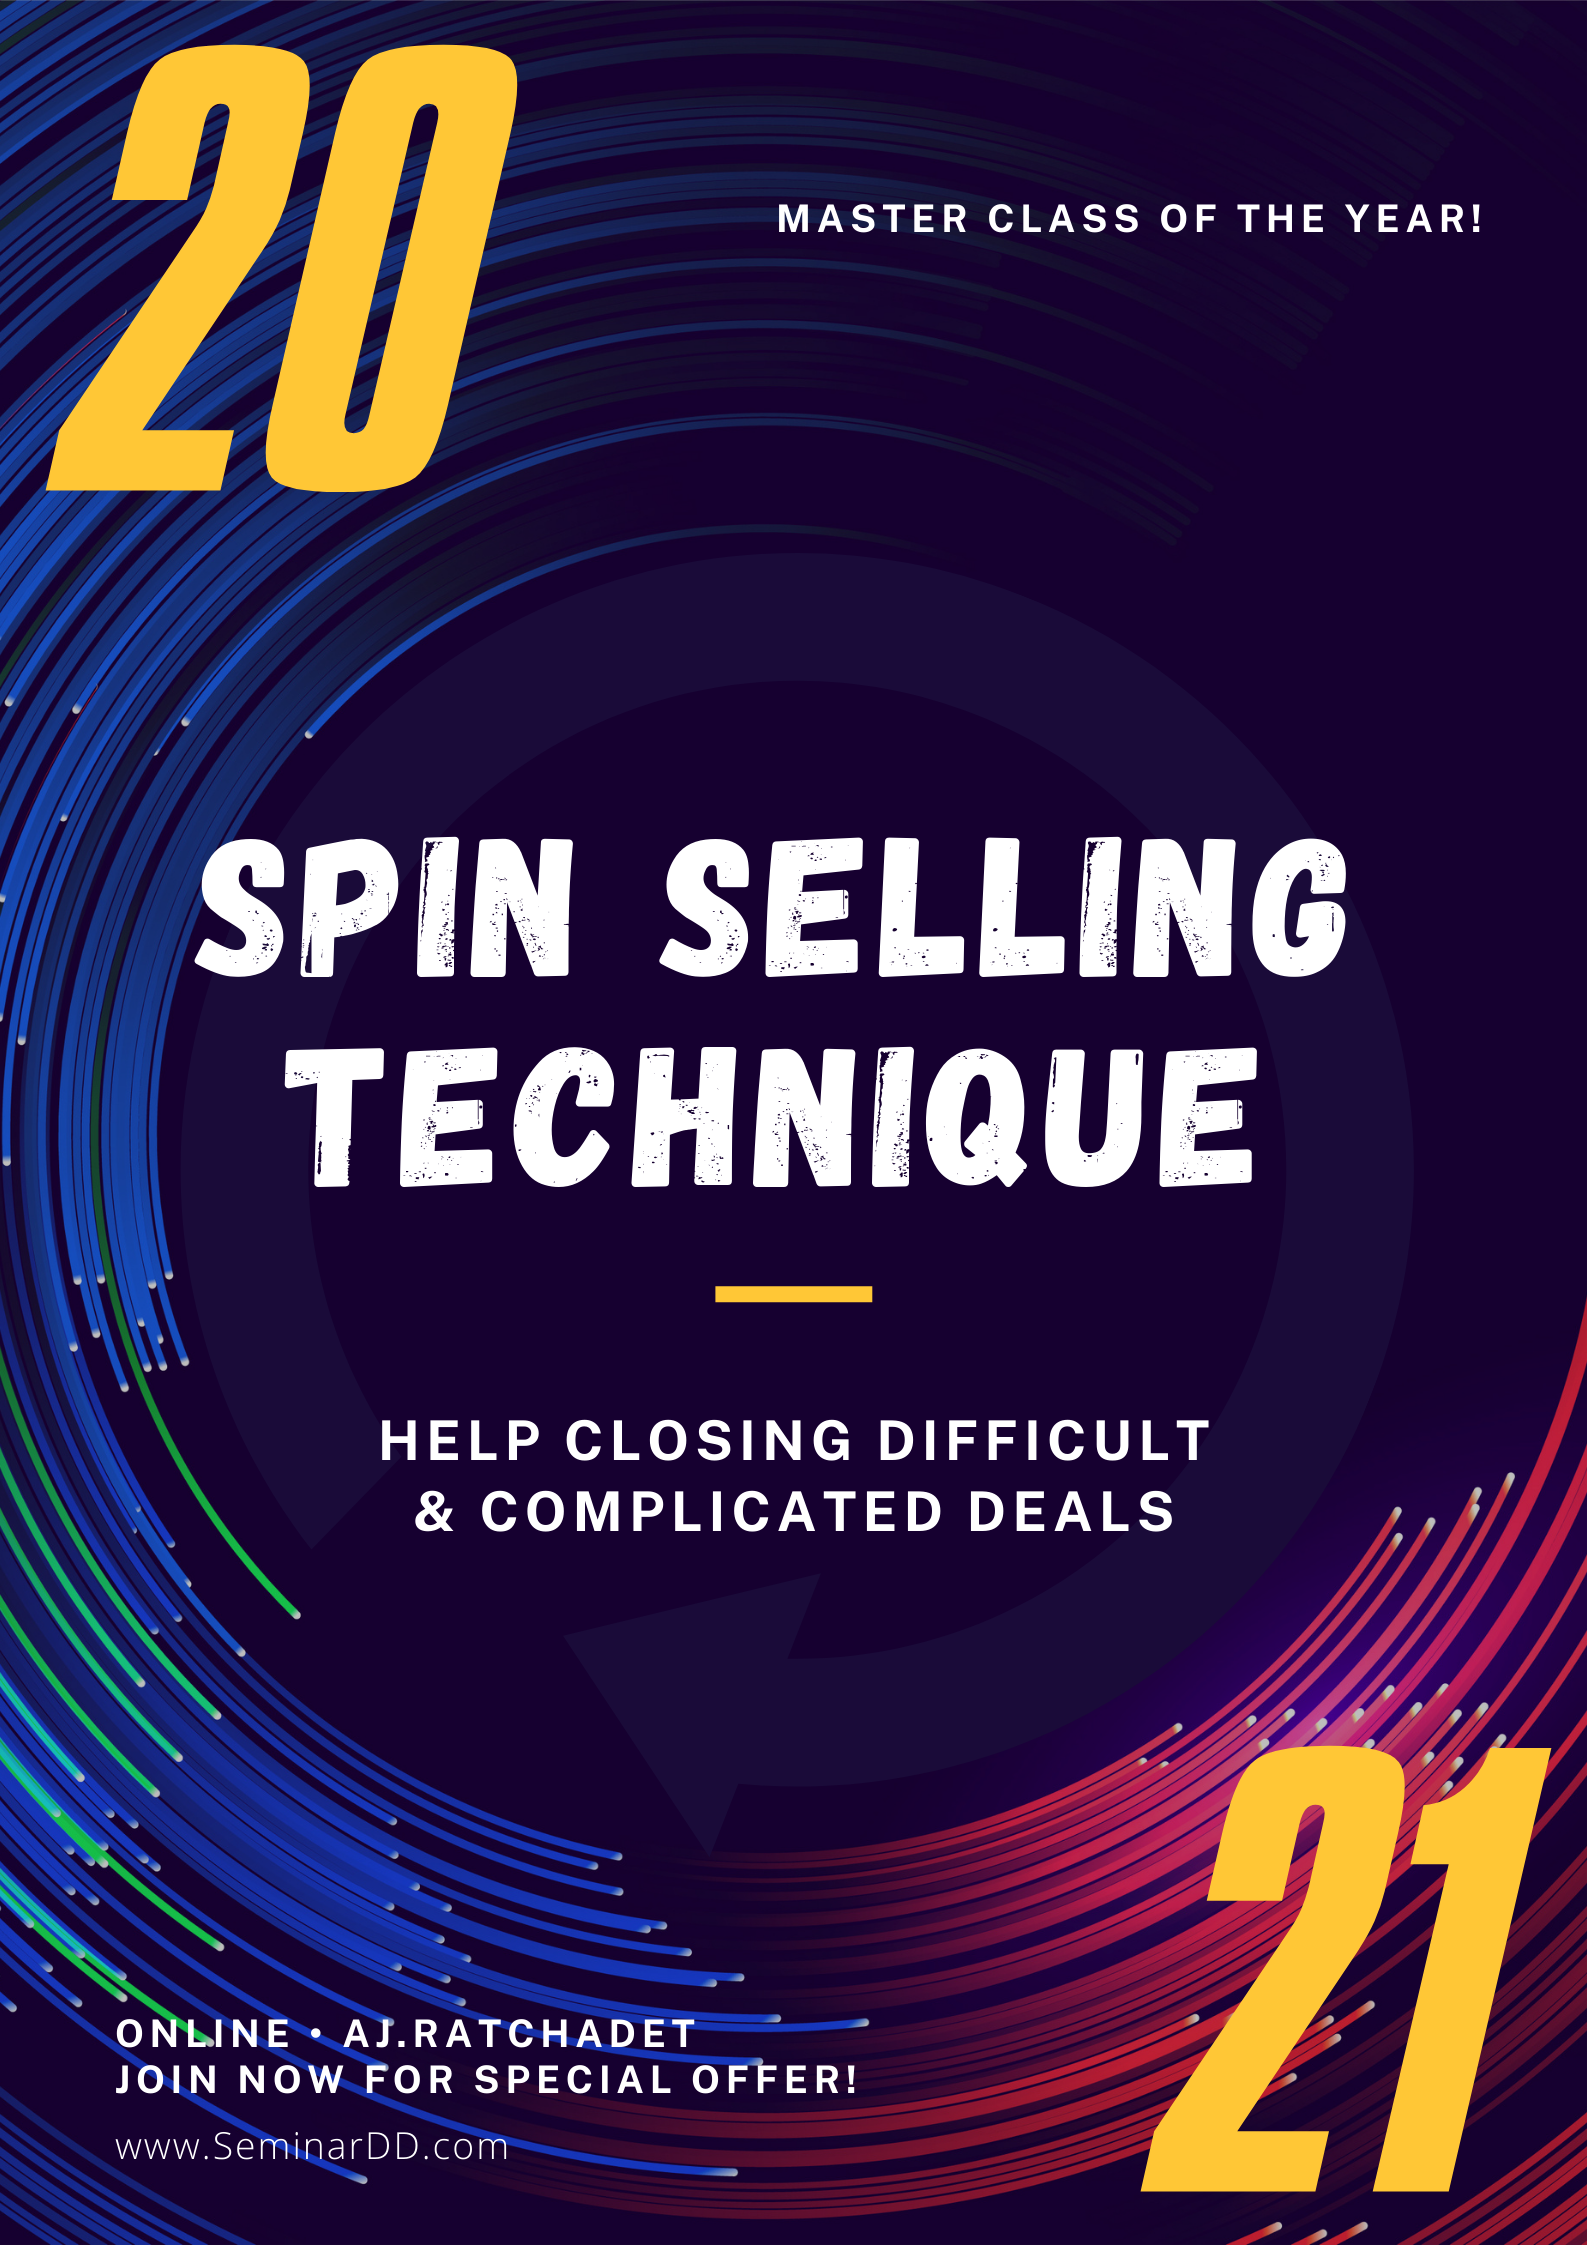 หลักสูตรอบรม ! เทคนิค SPIN Selling เพื่อปิดการขาย (SPIN Selling Technique to Close the Sales) - หลักสูตรเต็มวัน